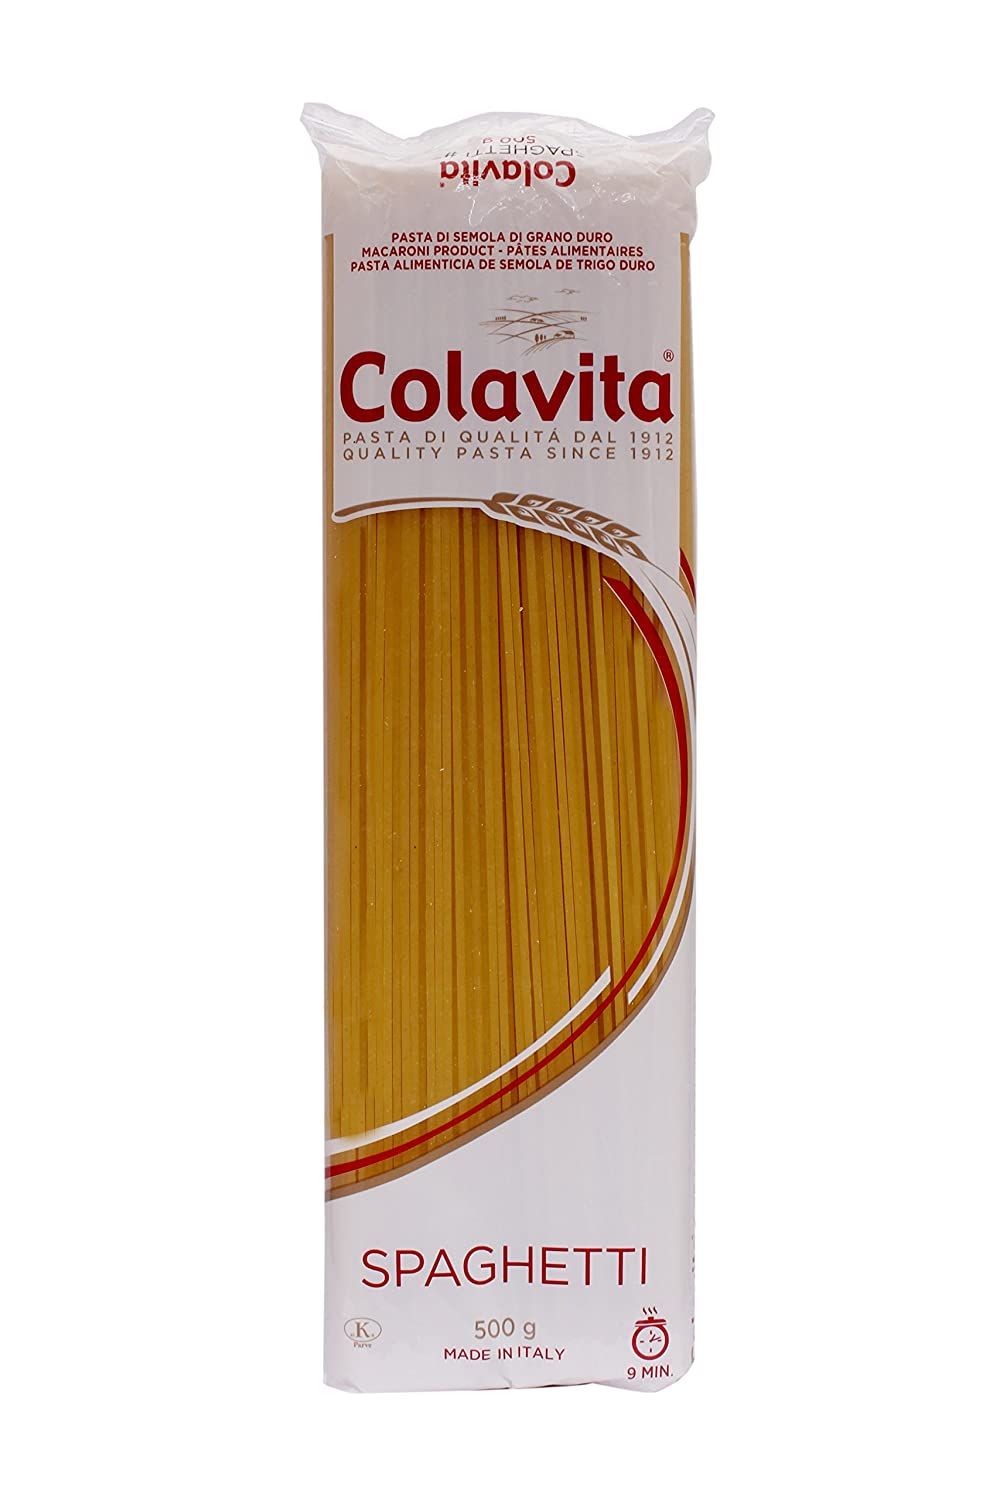 Colavita Spaghetti Pasta Image